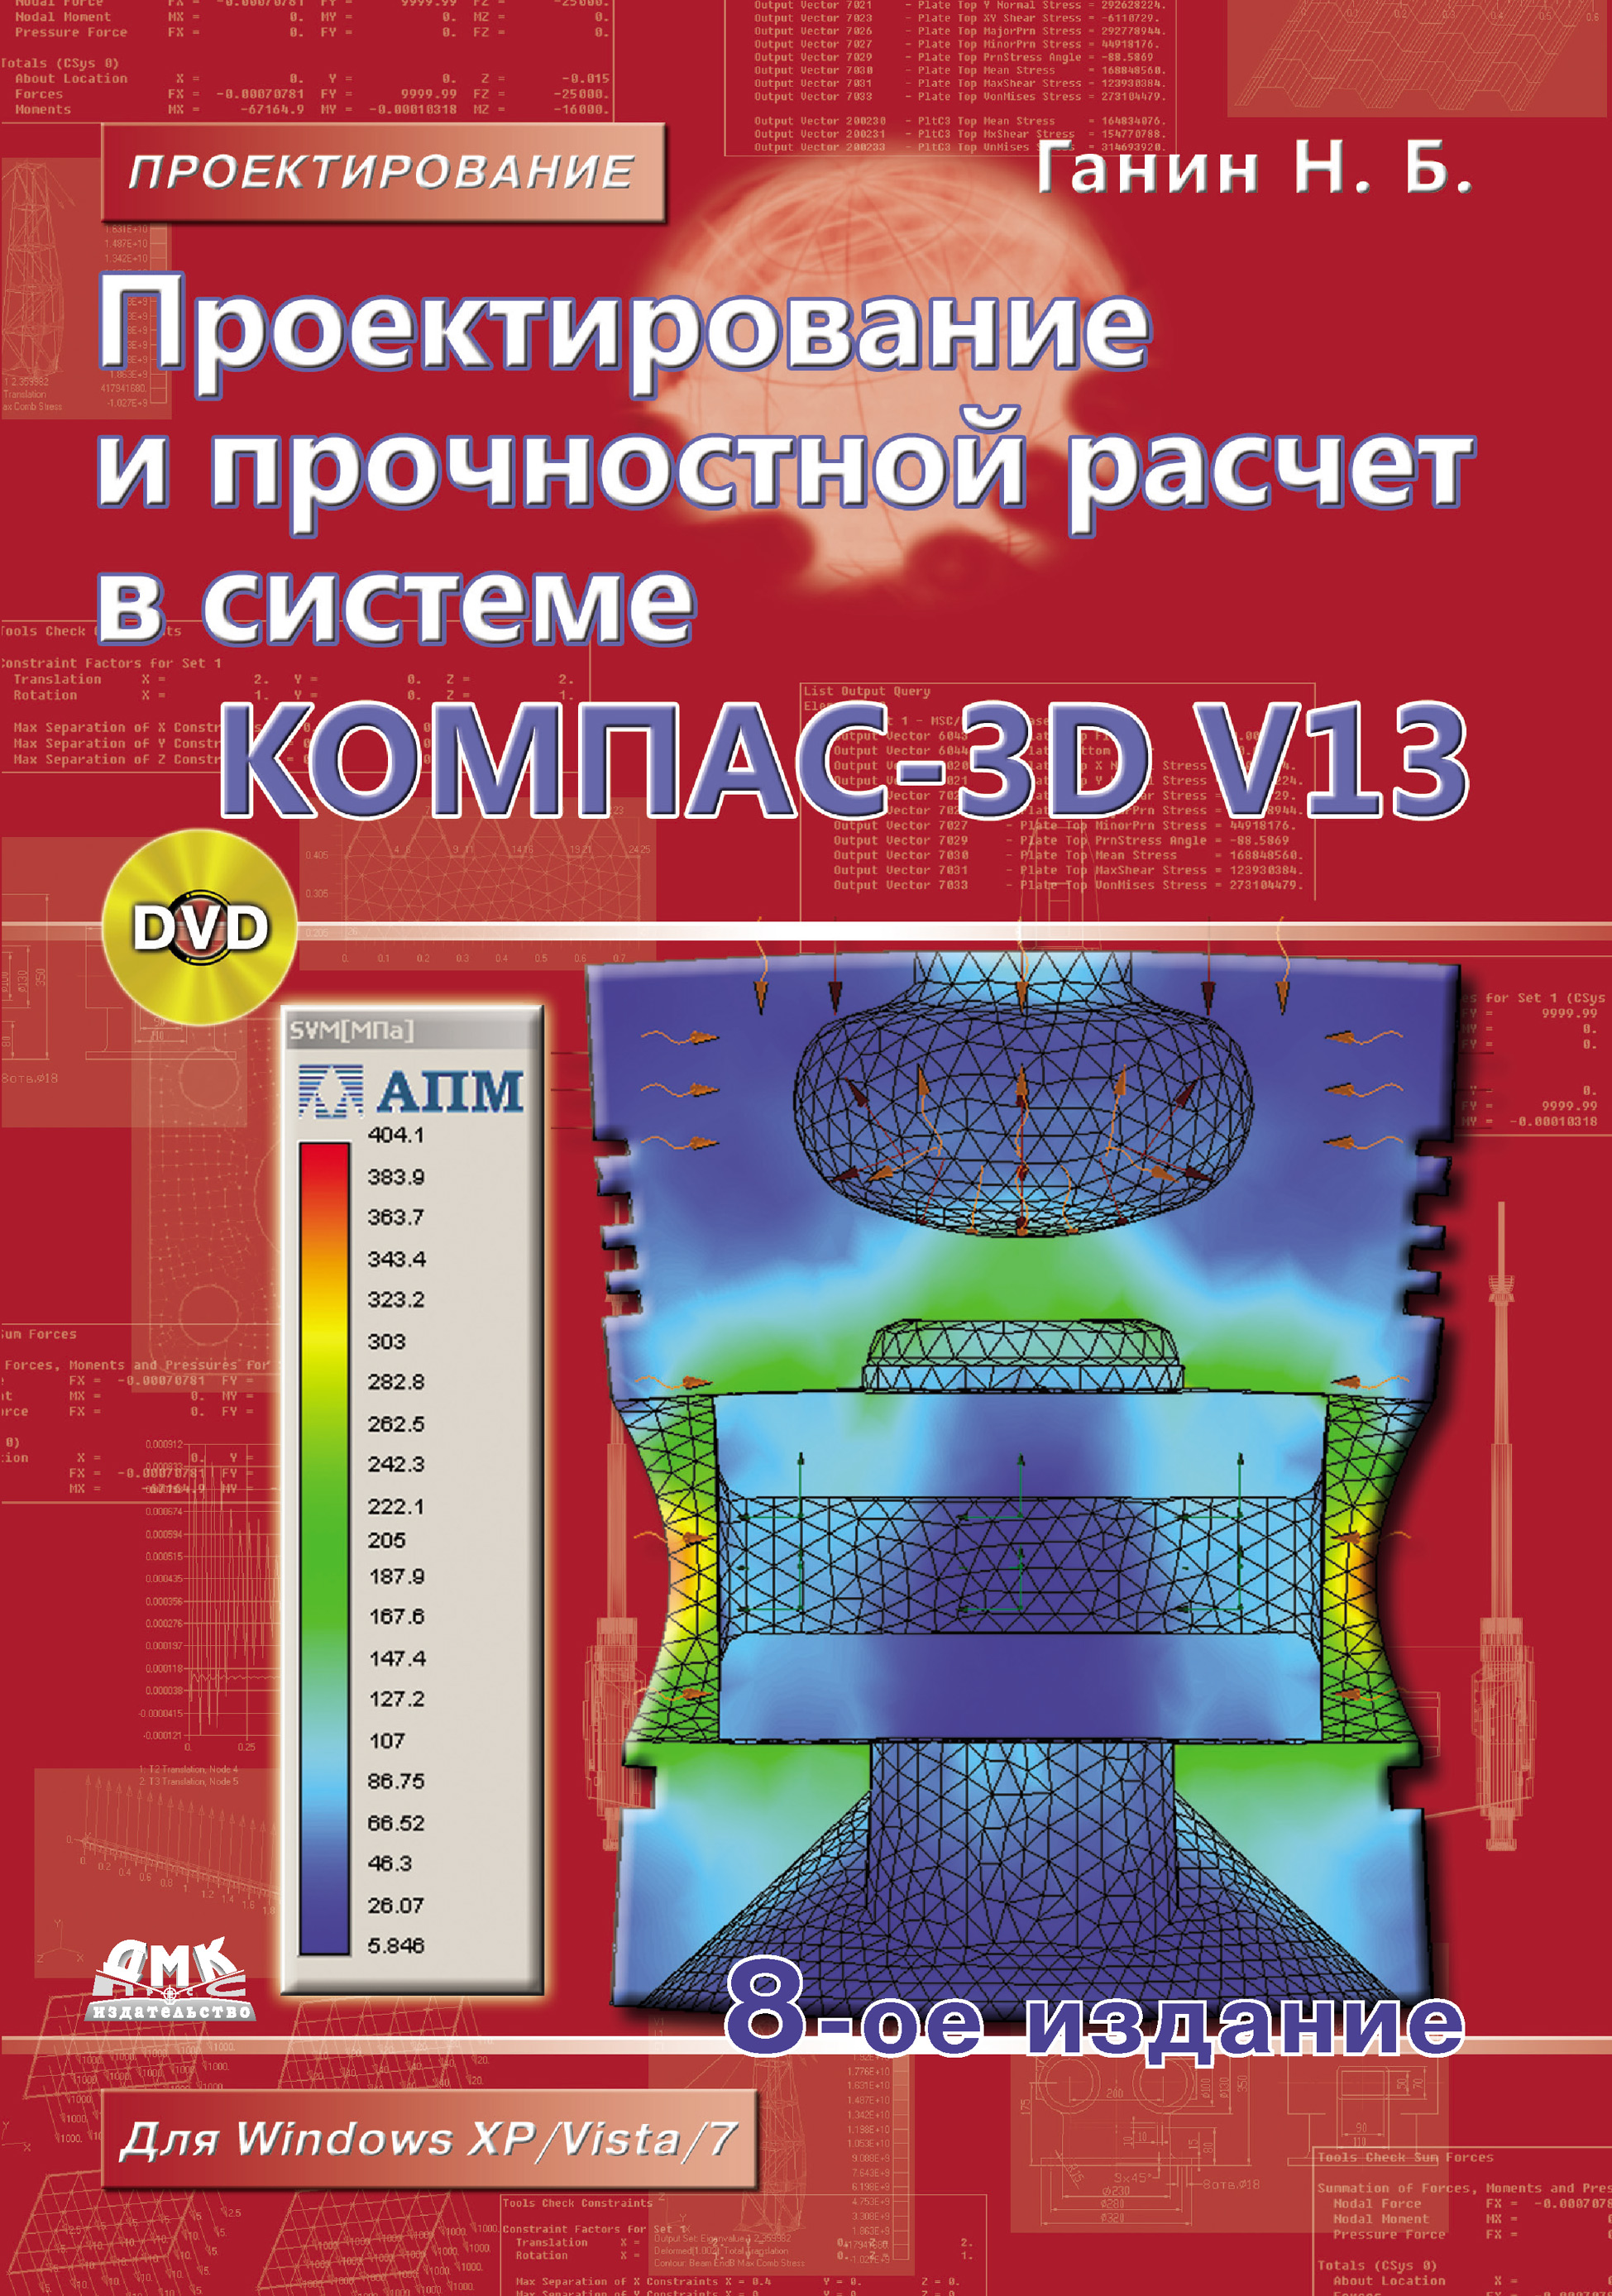 Книга Проектирование (ДМК Пресс) Проектирование и прочностной расчет в системе КОМПАС-3D V13 созданная Н. Б. Ганин может относится к жанру программы, техническая литература. Стоимость электронной книги Проектирование и прочностной расчет в системе КОМПАС-3D V13 с идентификатором 6598795 составляет 359.00 руб.